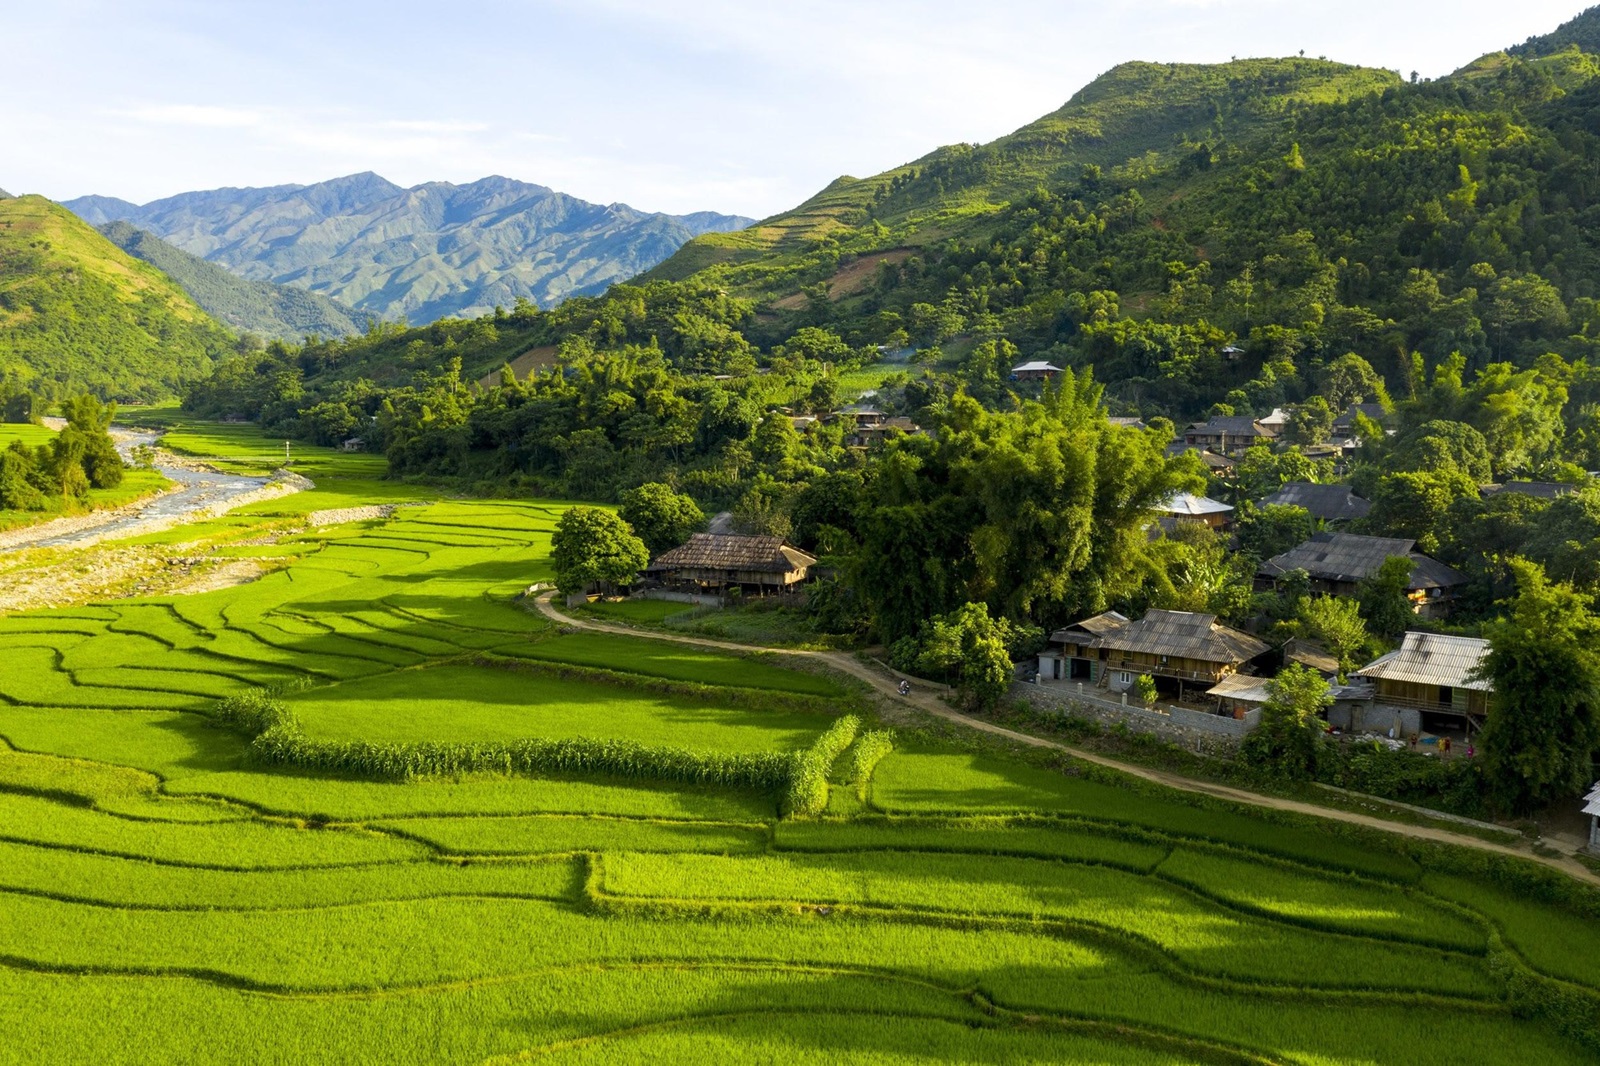 Les rizières de la vallée de Tu Le, sur la route des photographes